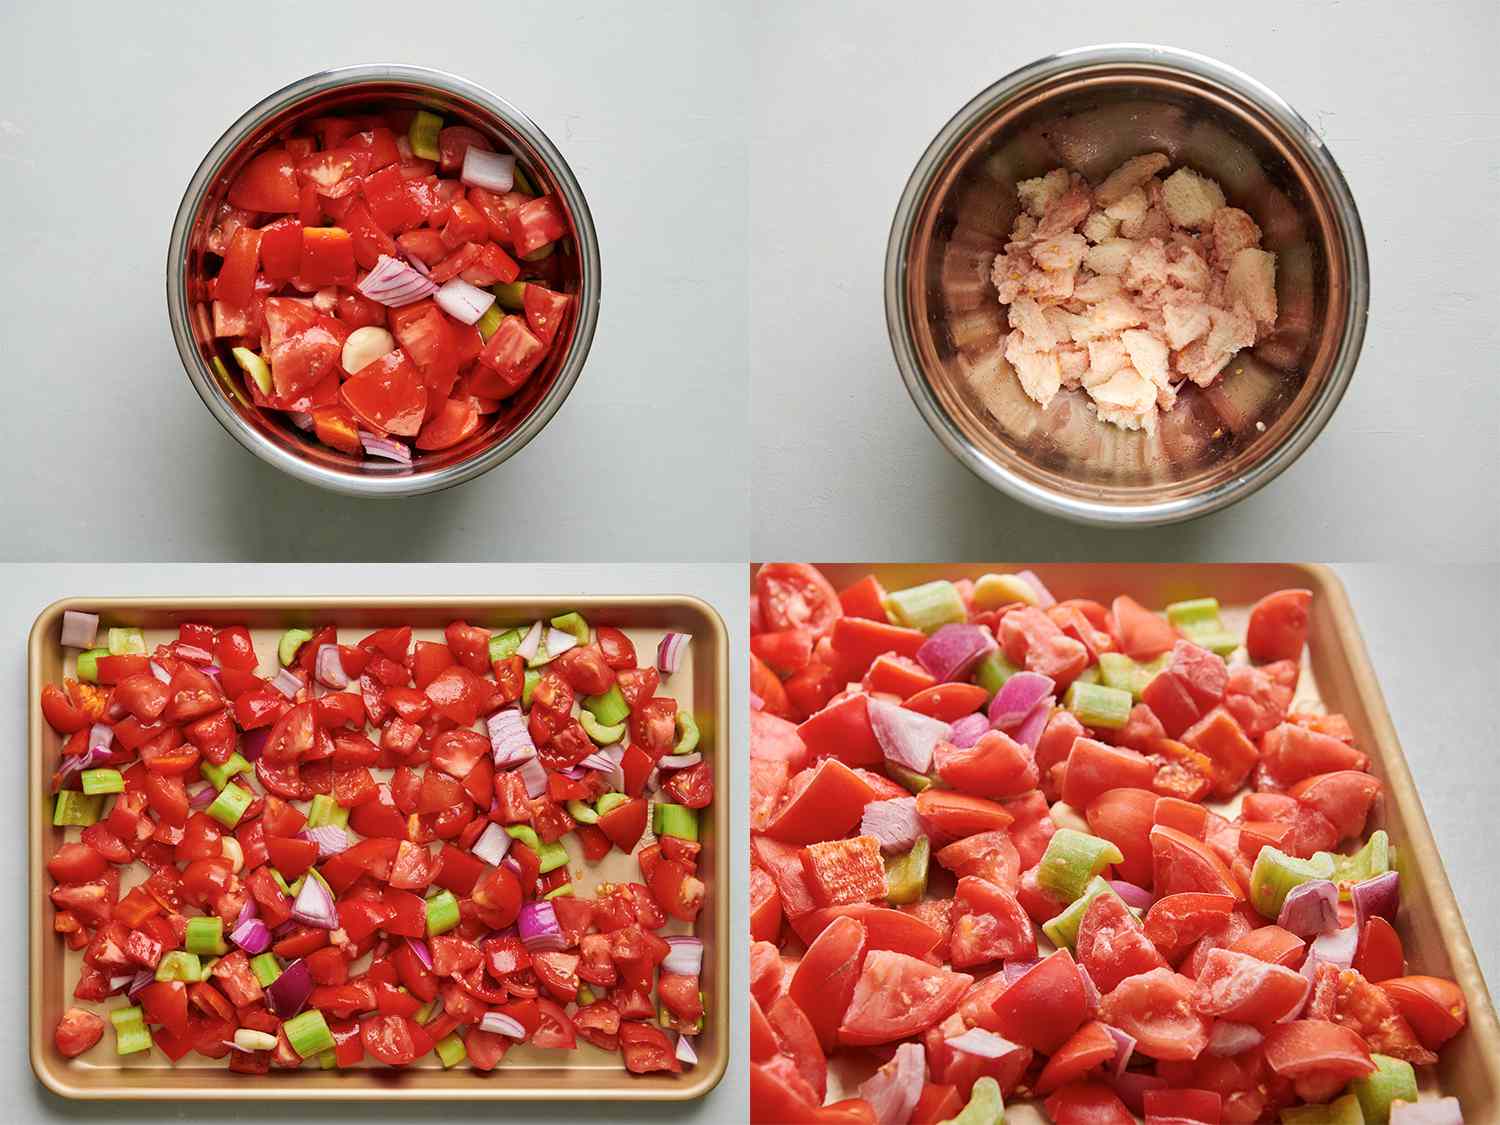 四幅图像拼贴画。左上角的图片显示了西红柿、黄瓜、洋葱、胡椒、大蒜和盐混合在一起，并彻底倒入一个大碗中。右上方的图片显示了一个大碗里排干的果汁和面包。左下角的图片显示了排干的蔬菜转移到有边框的烤盘上。右下方的图片显示的是冷冻的蔬菜，放在有边的烤盘上。